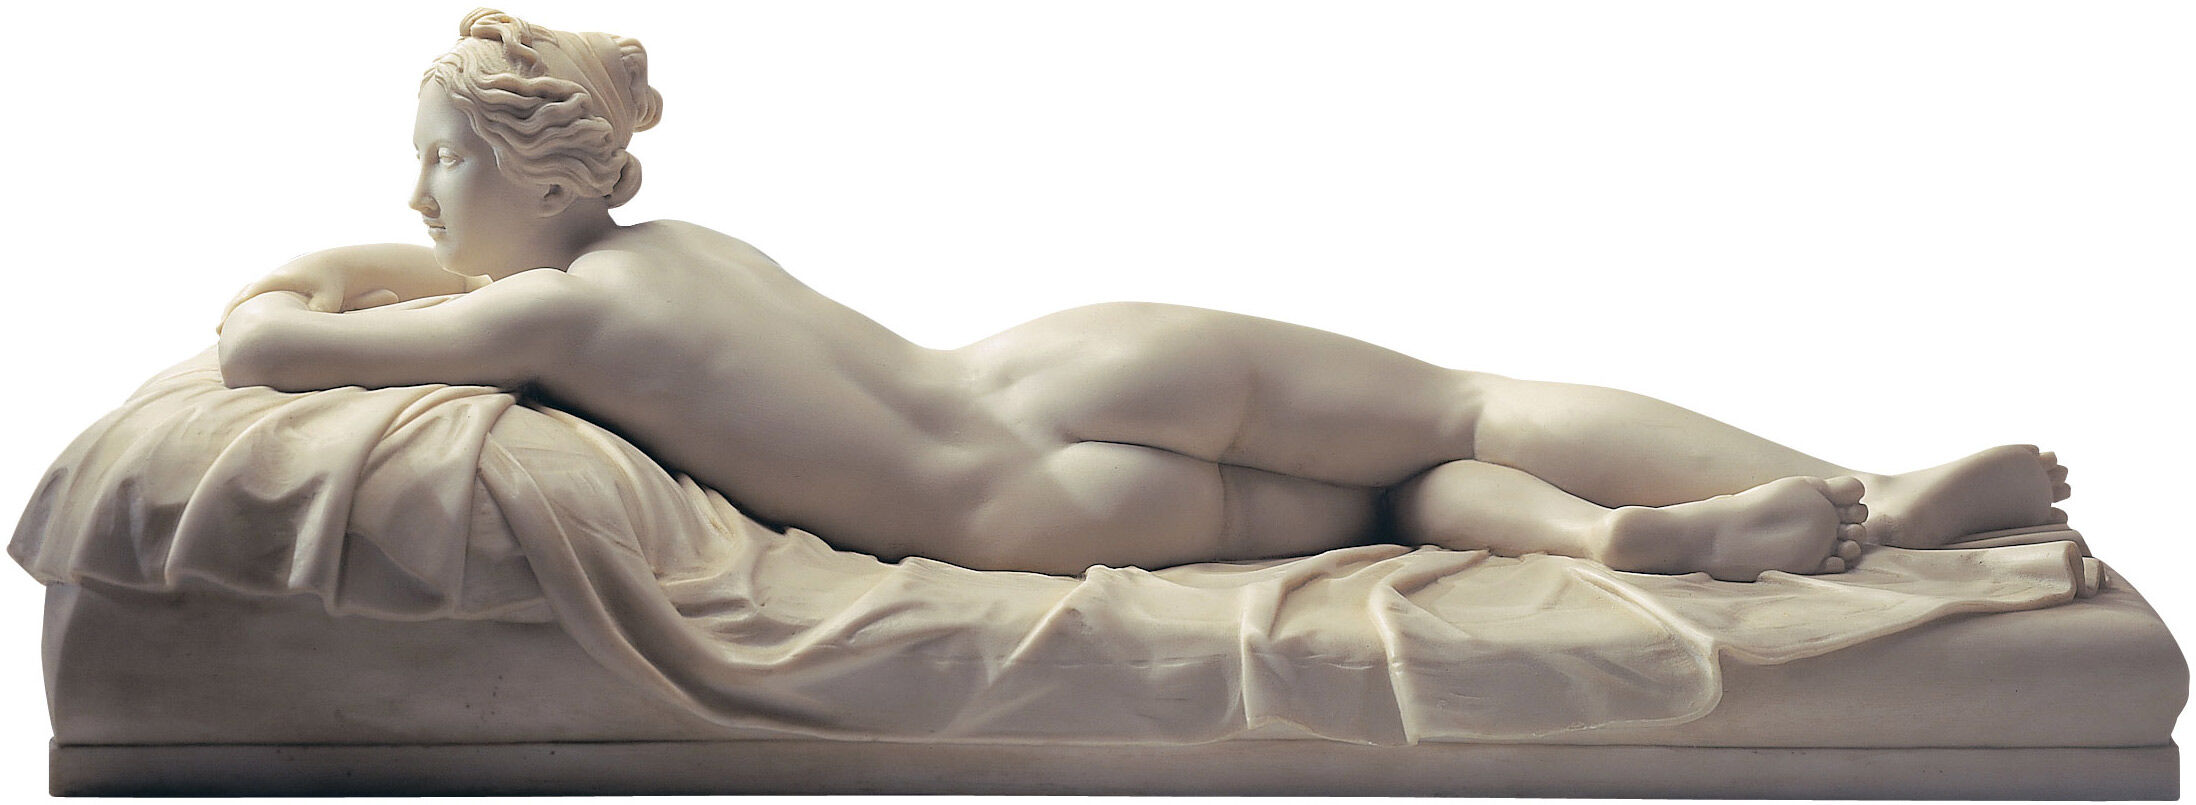 Sculpture "The Resting Girl" (1826), artificial marble by Johann Gottfried Schadow